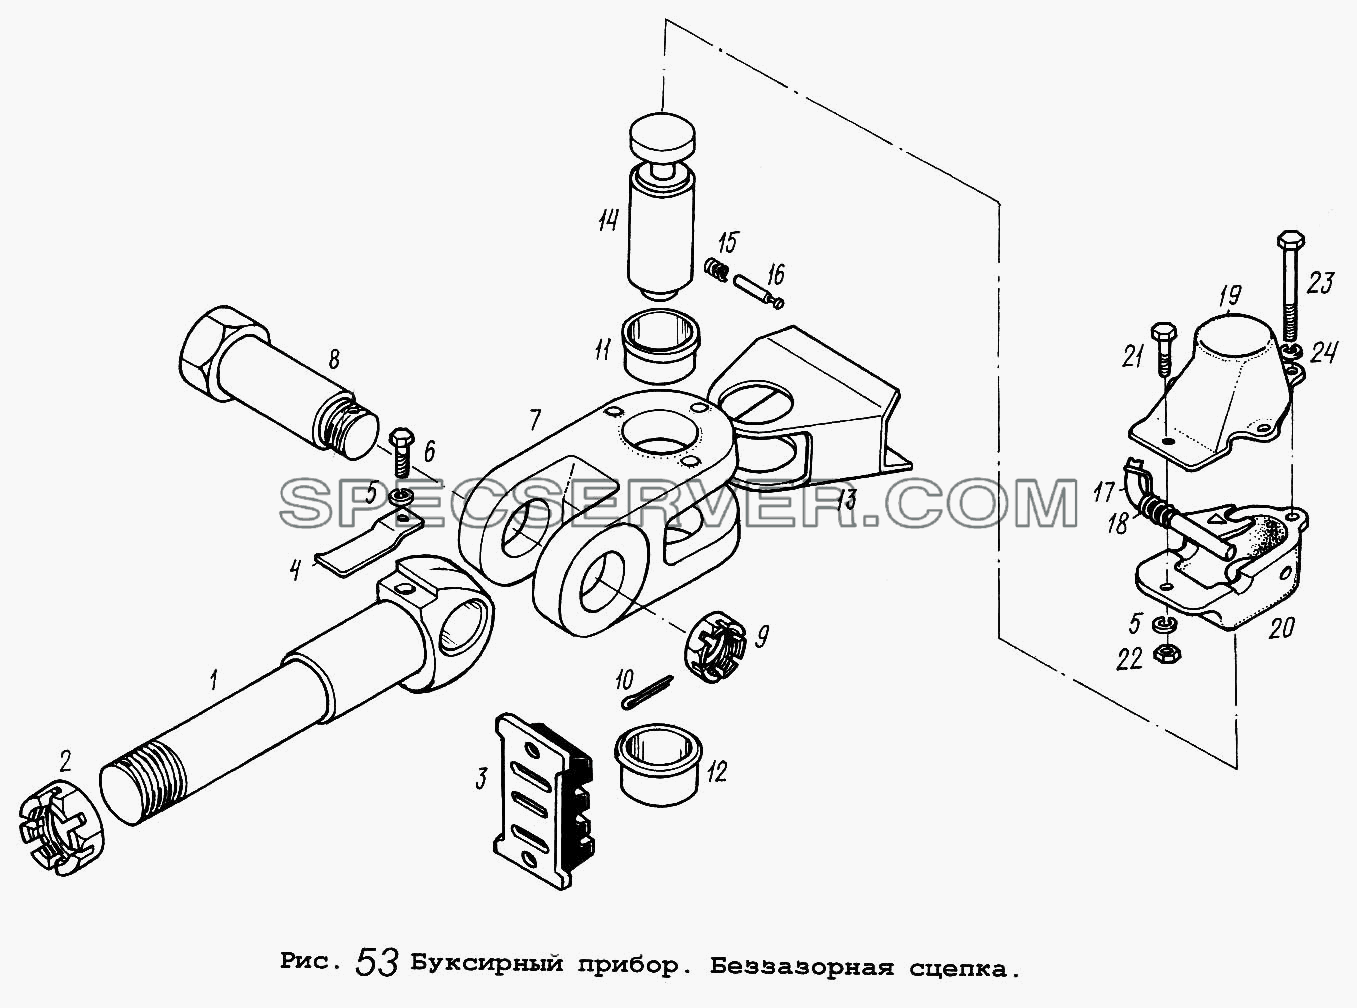 Буксирный прибор. Беззазорная сцепка для МАЗ-64229 (список запасных частей)